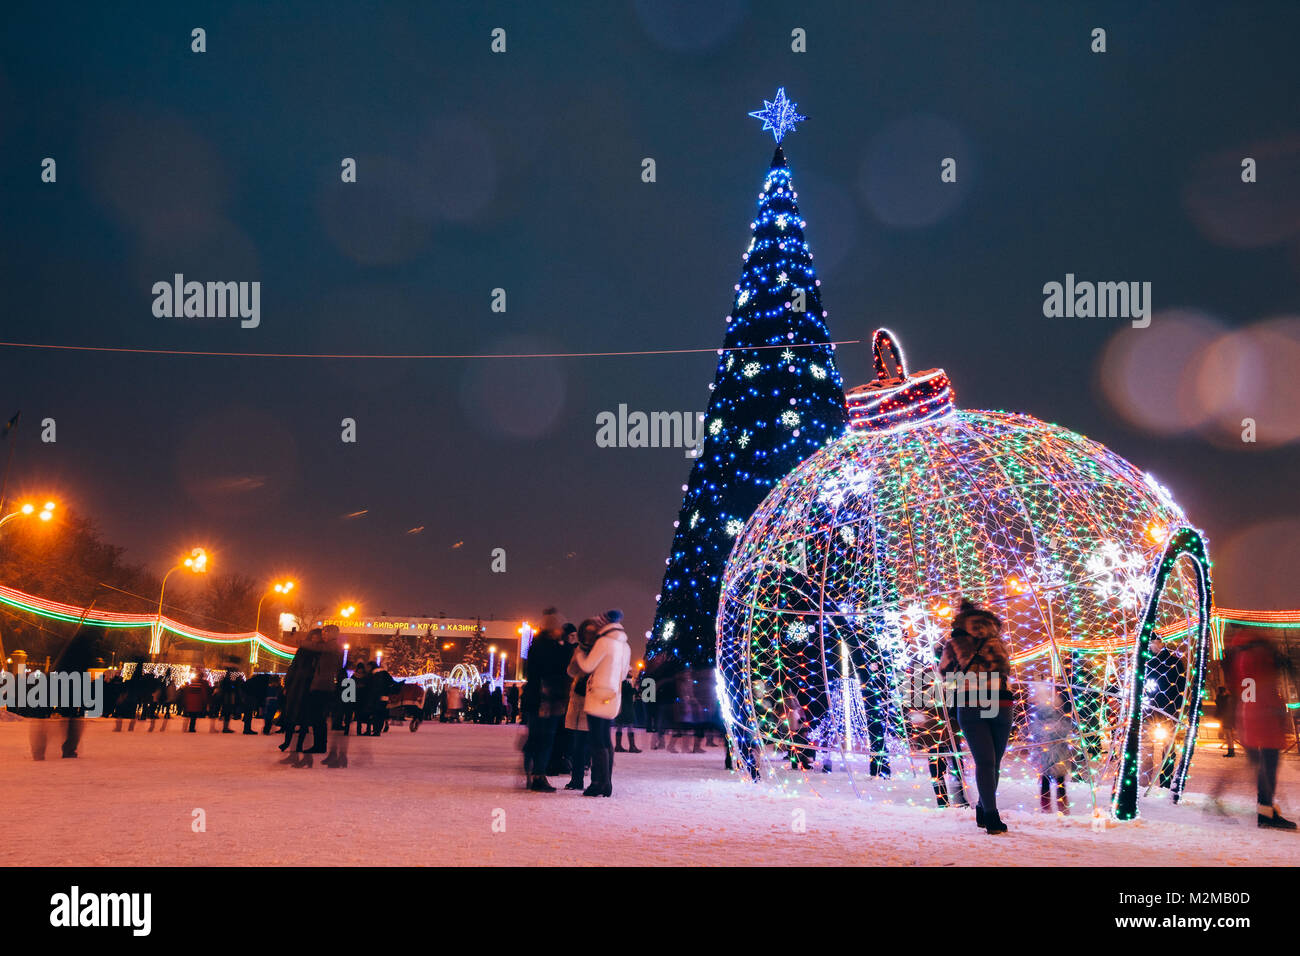 Gomel, Belarus - 25 Dezember, 2016: Stadtplatz der Stadt Gomel im Urlaub das Neue Jahr mit einem Weihnachtsbaum in der Mitte Stockfoto